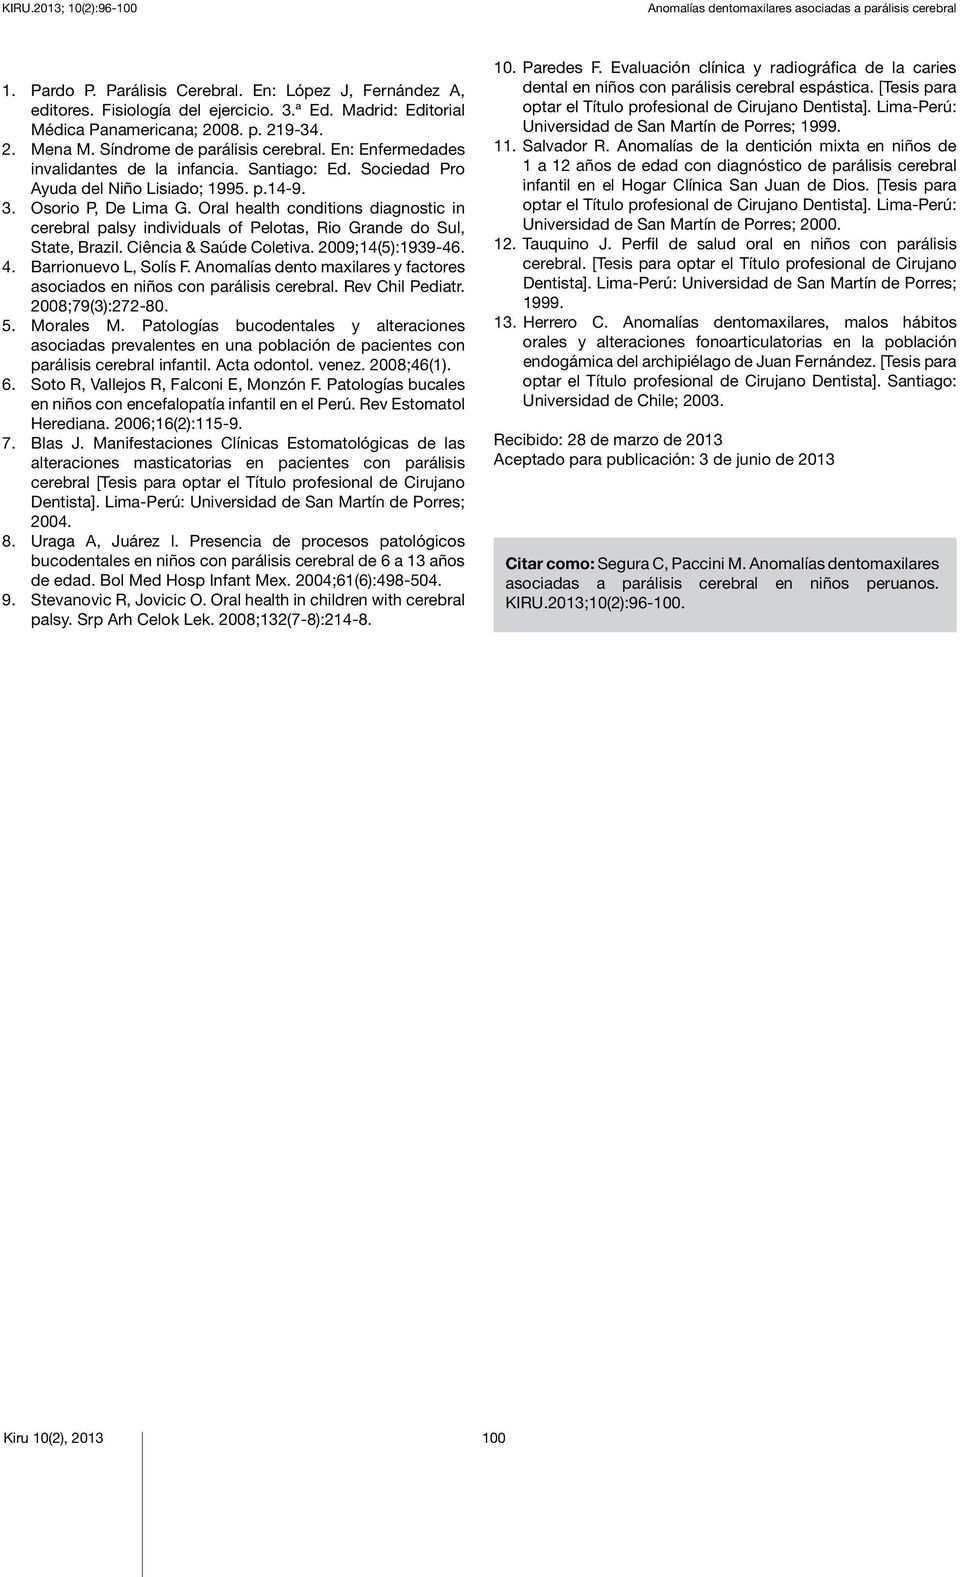 Sociedad Pro Ayuda del Niño Lisiado; 1995. p.14-9. 3. Osorio P, De Lima G. Oral health conditions diagnostic in cerebral palsy individuals of Pelotas, Rio Grande do Sul, State, Brazil.